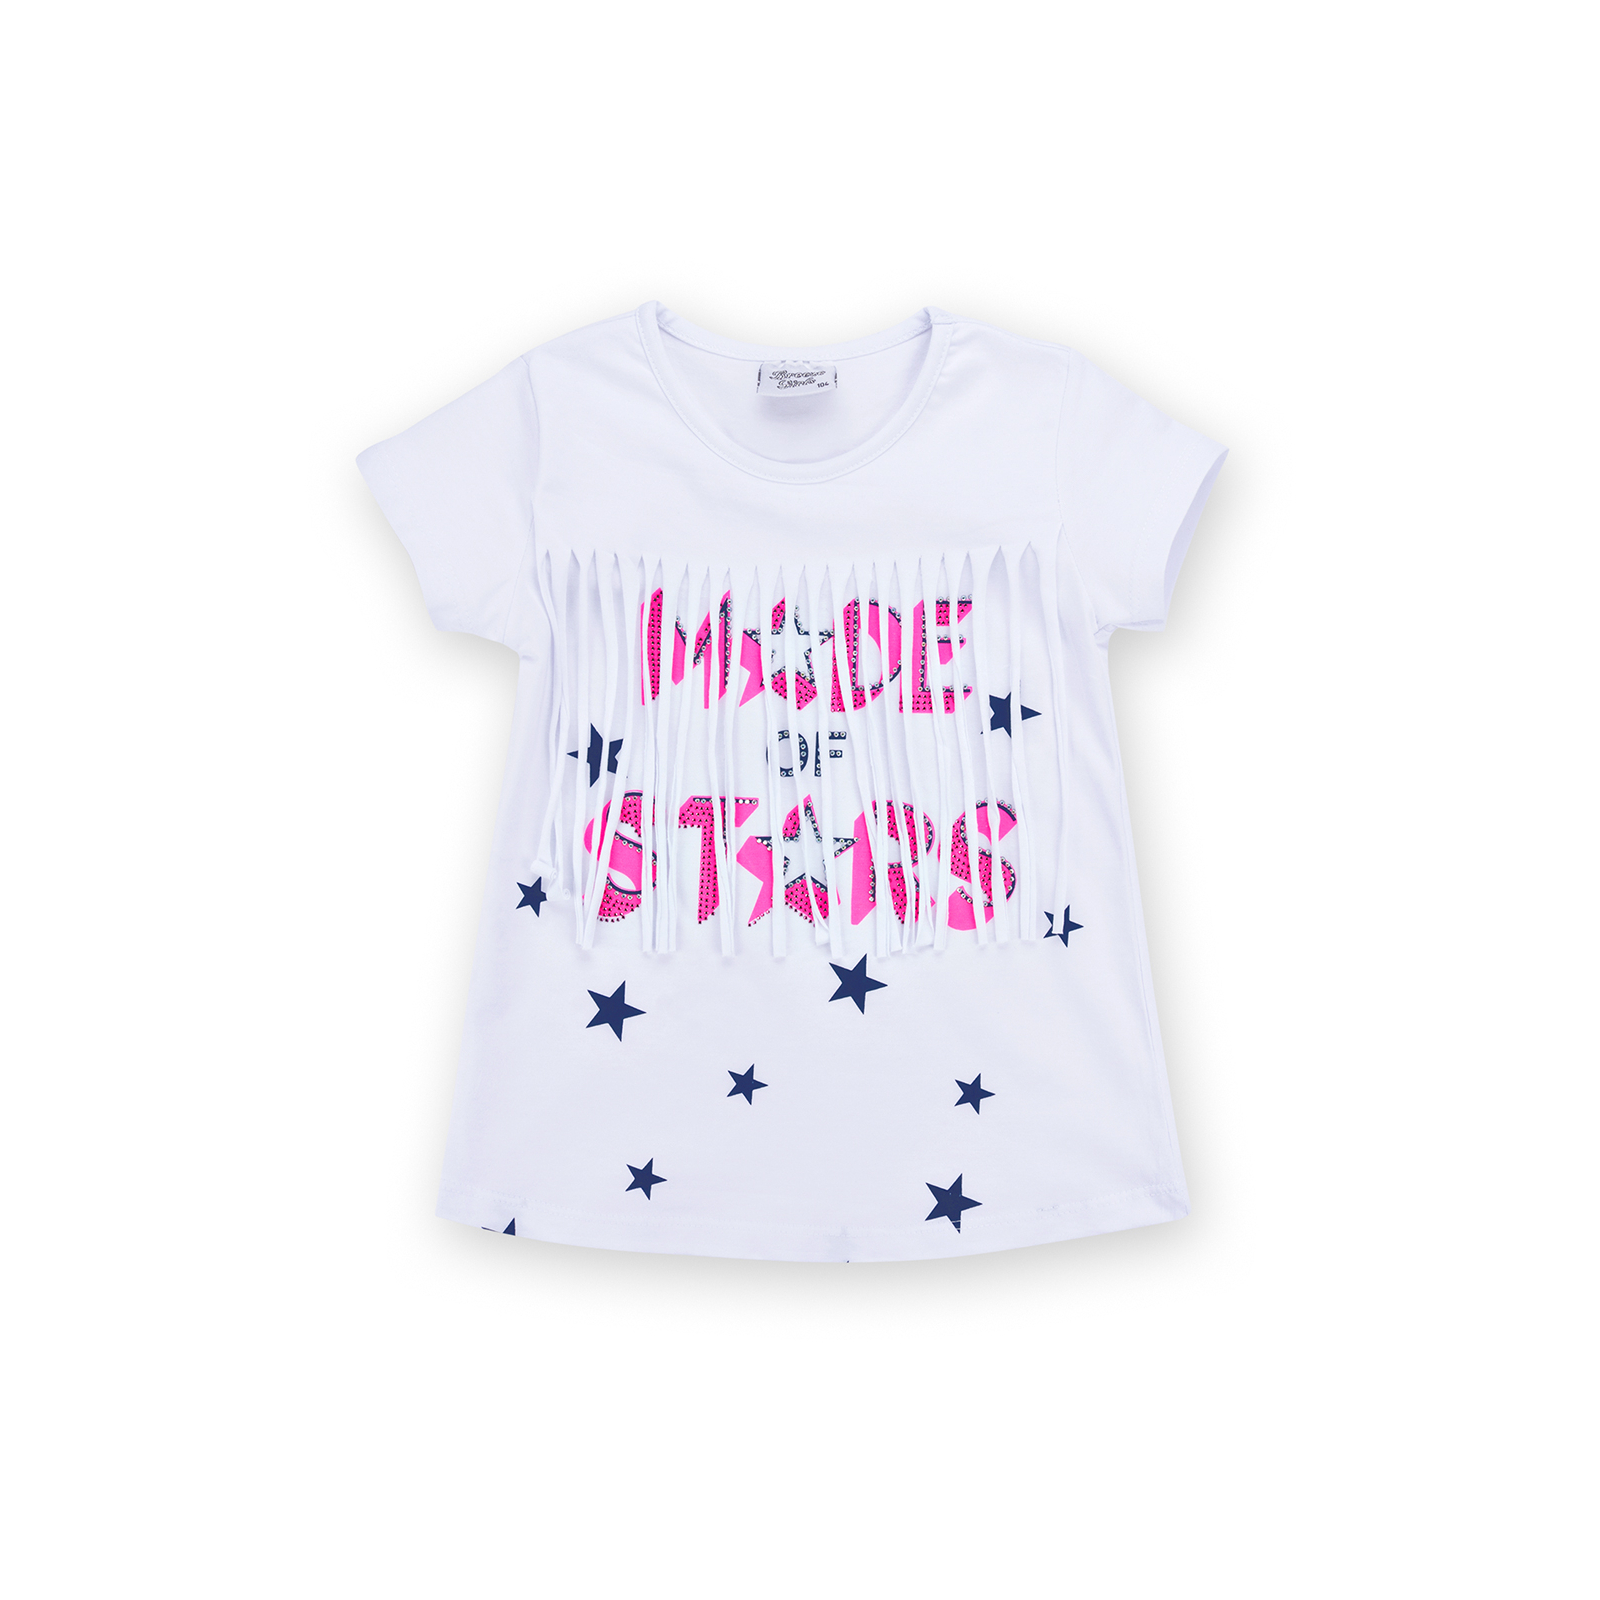 Набор детской одежды Breeze футболка со звездочками с шортами (9036-110G-pink) изображение 2